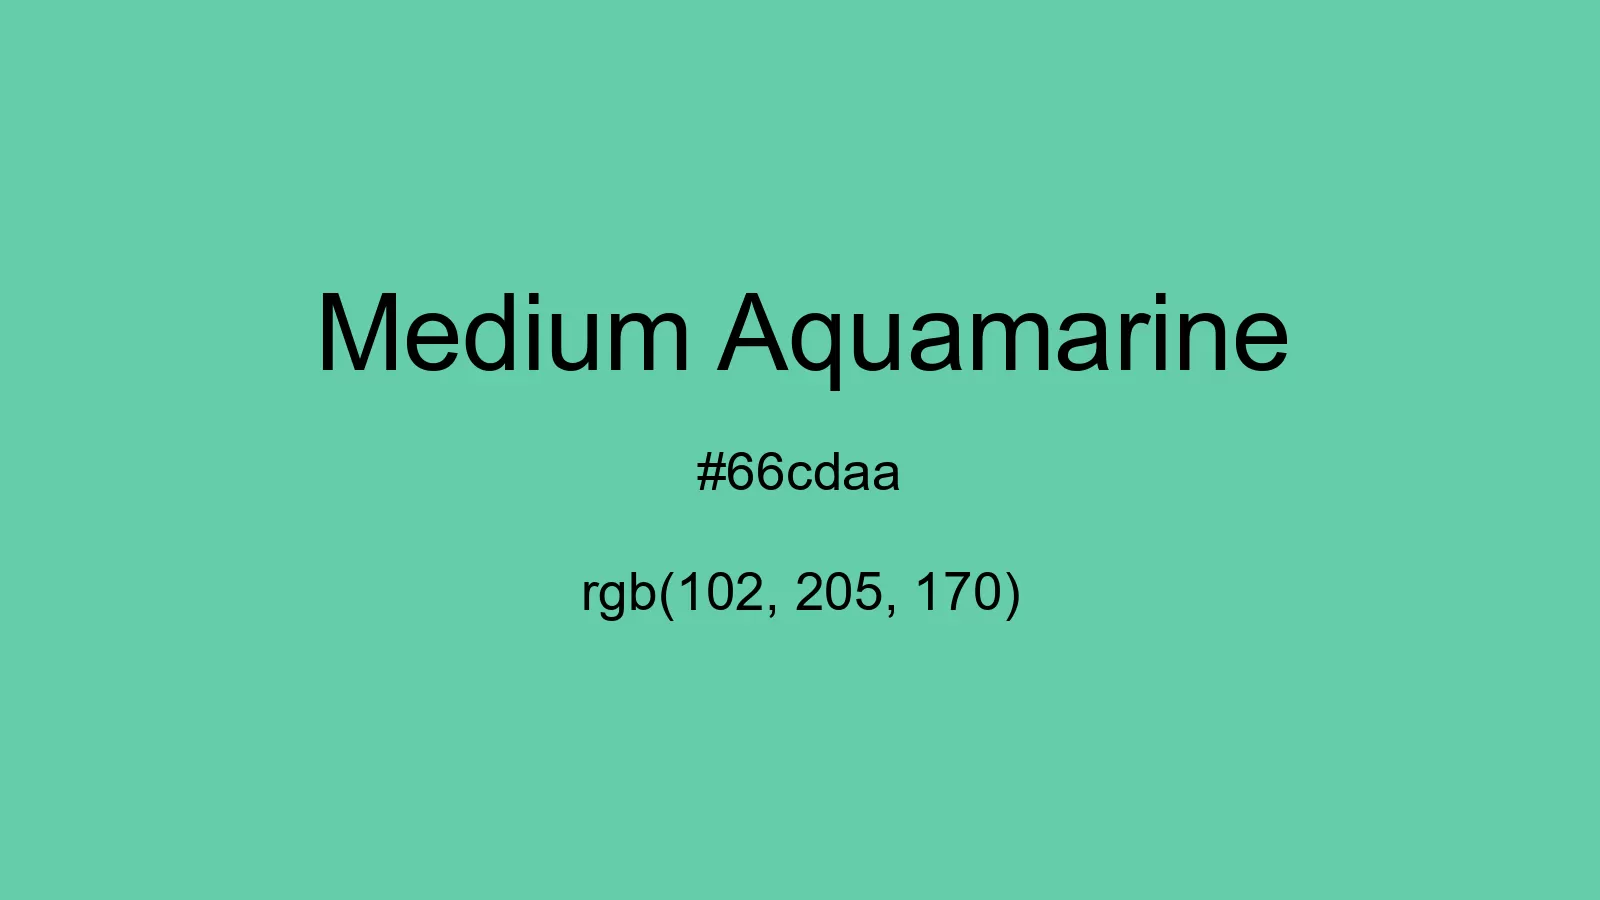 preview image of css Medium Aquamarine color